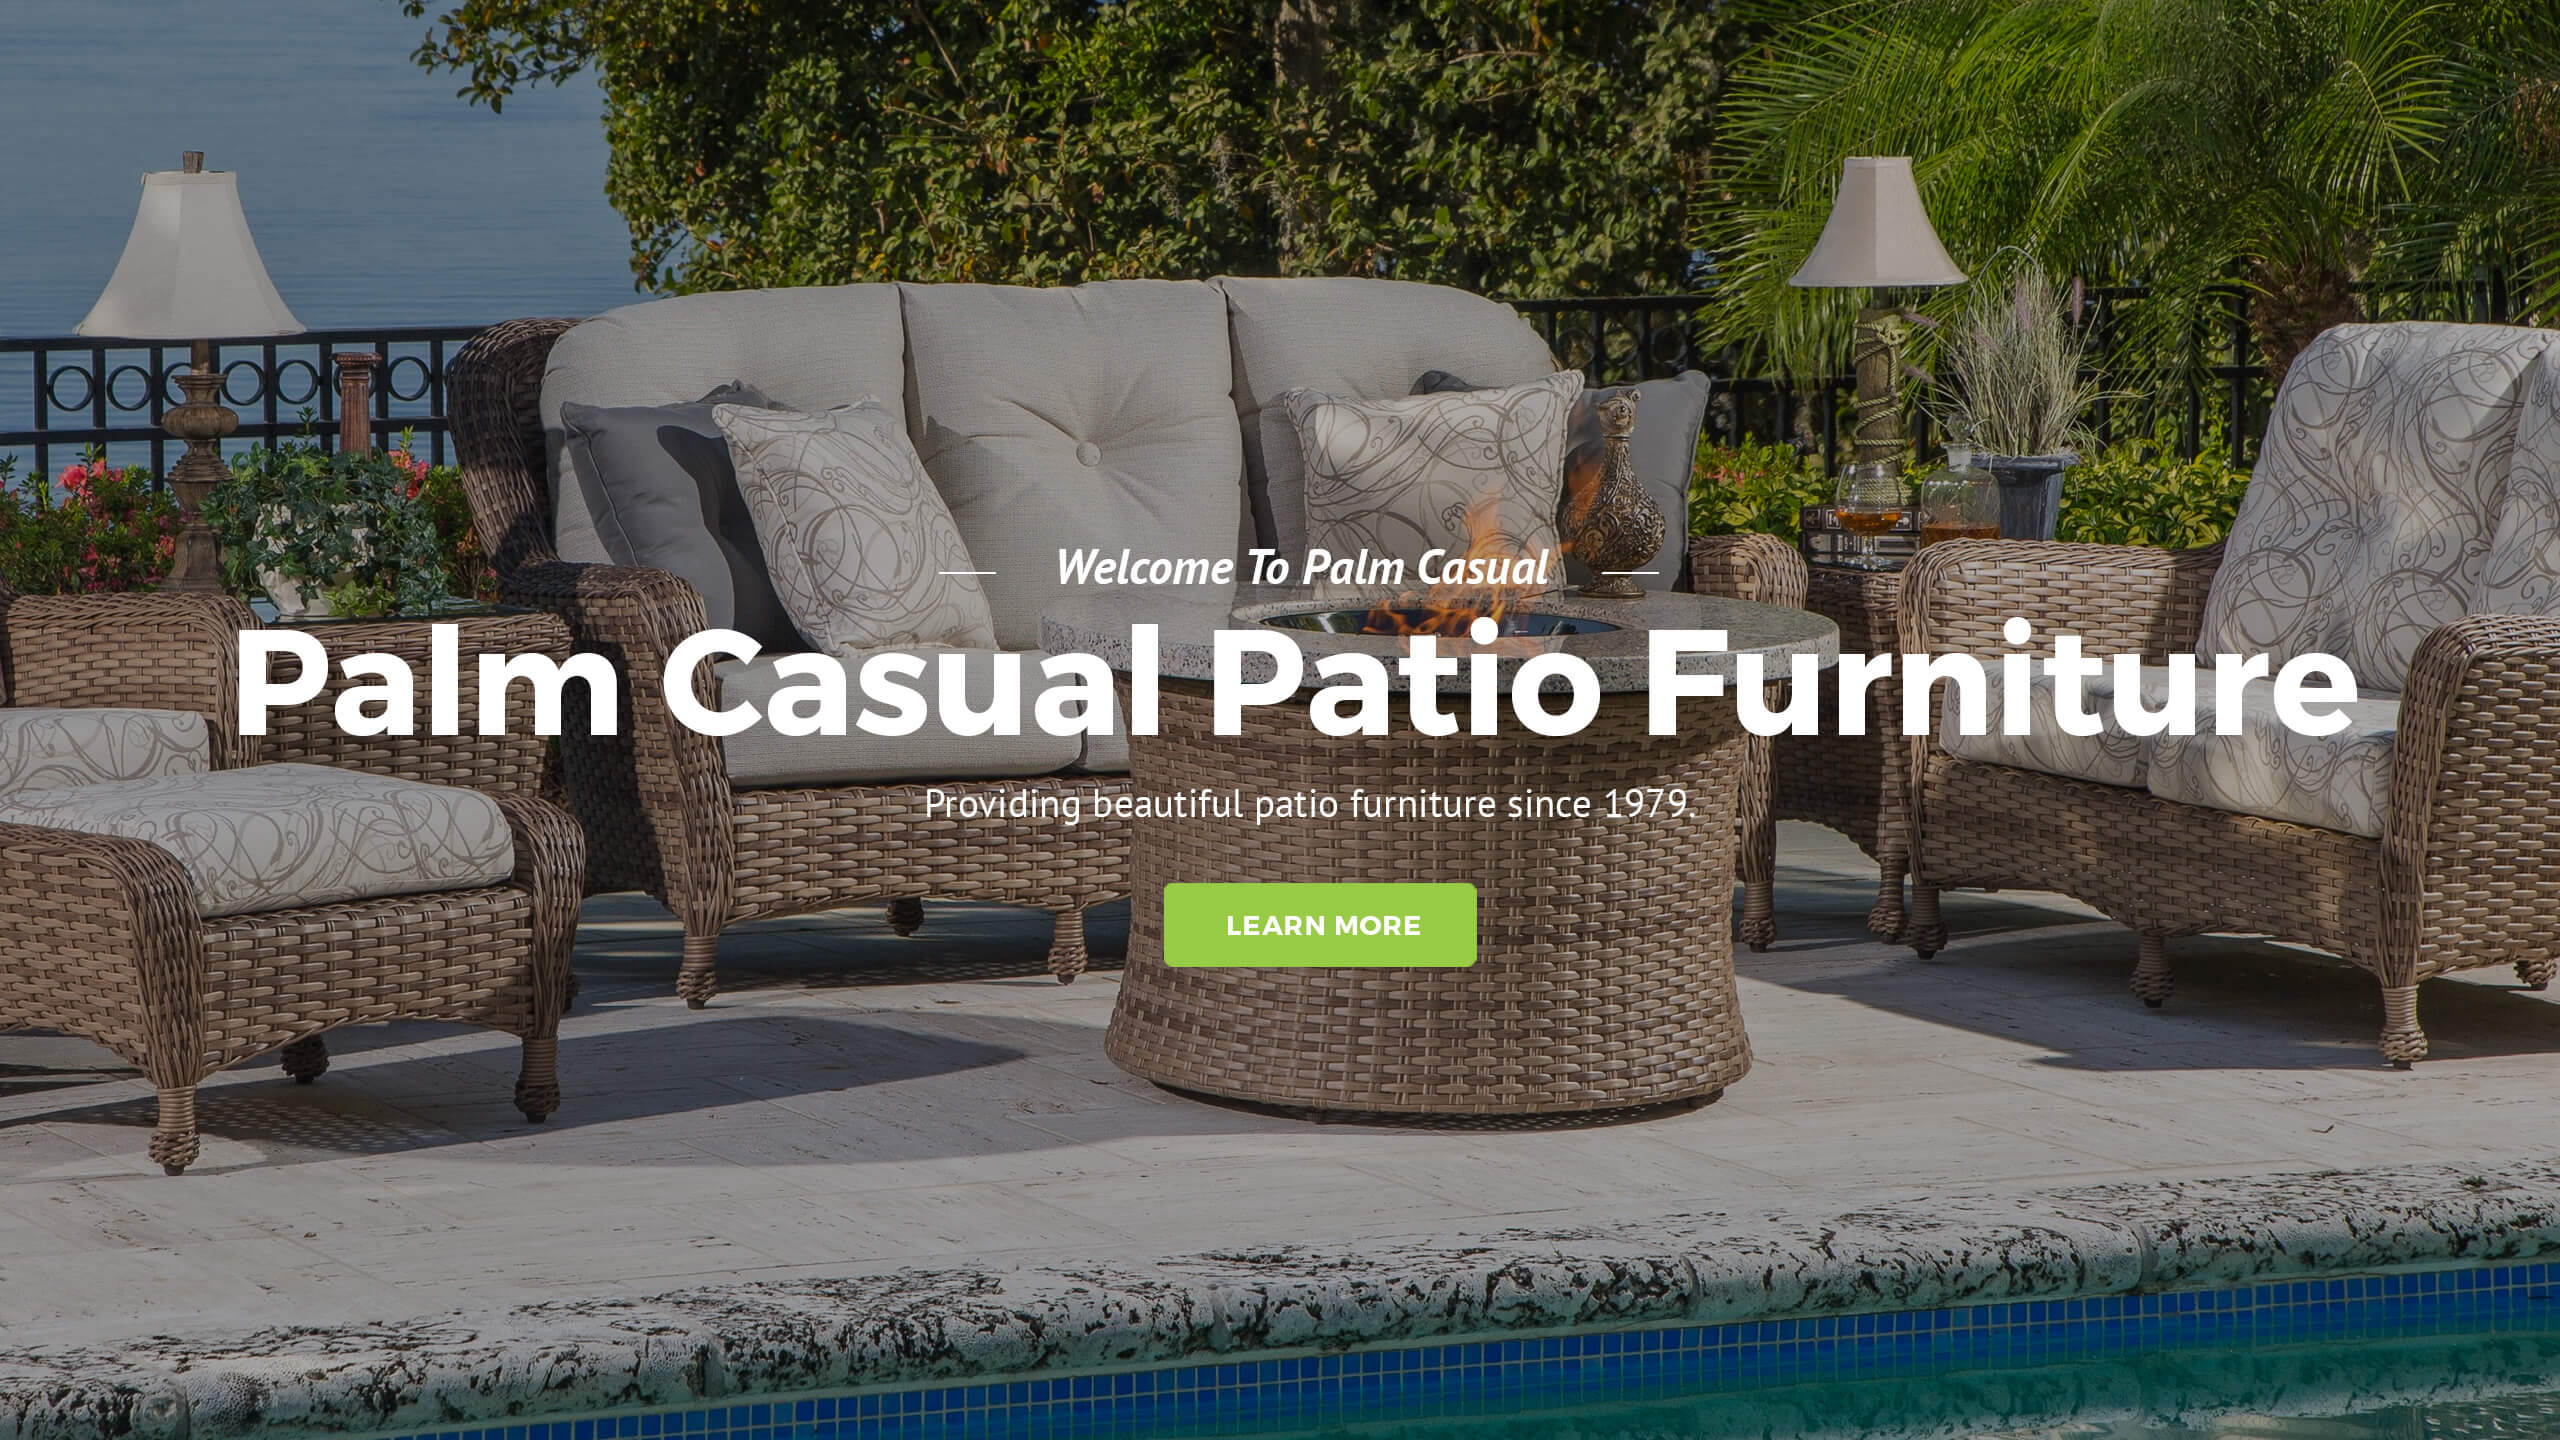 Outdoor Patio Furniture Orlando Cast Aluminium Furniture for dimensions 2560 X 1440